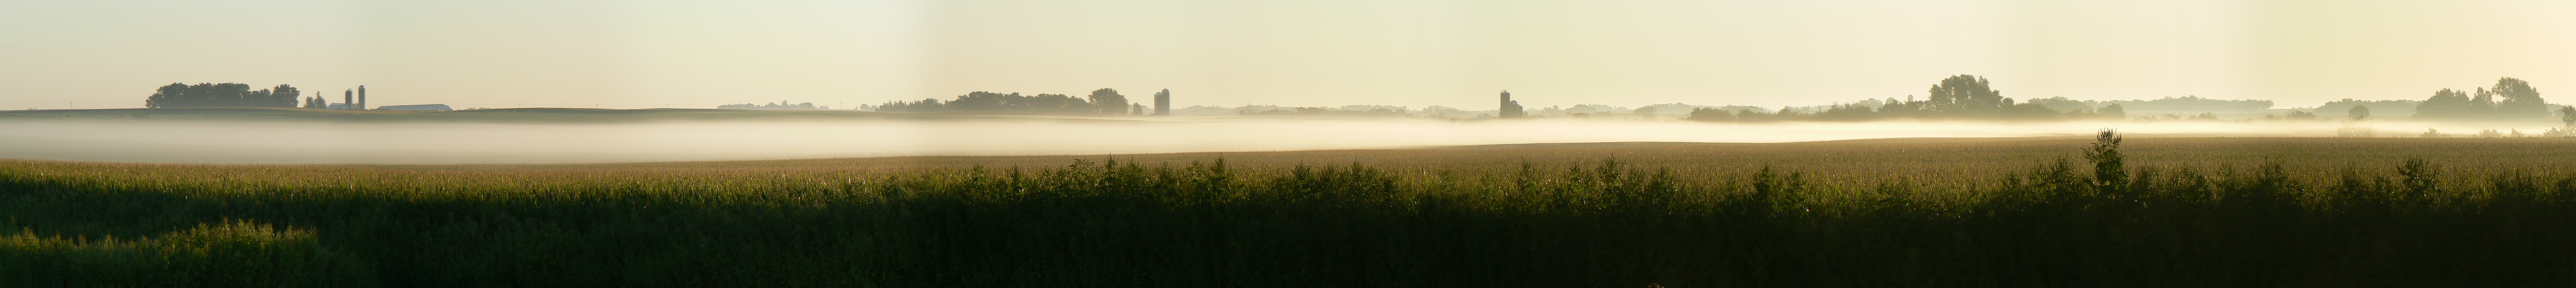 Morning fog panorama